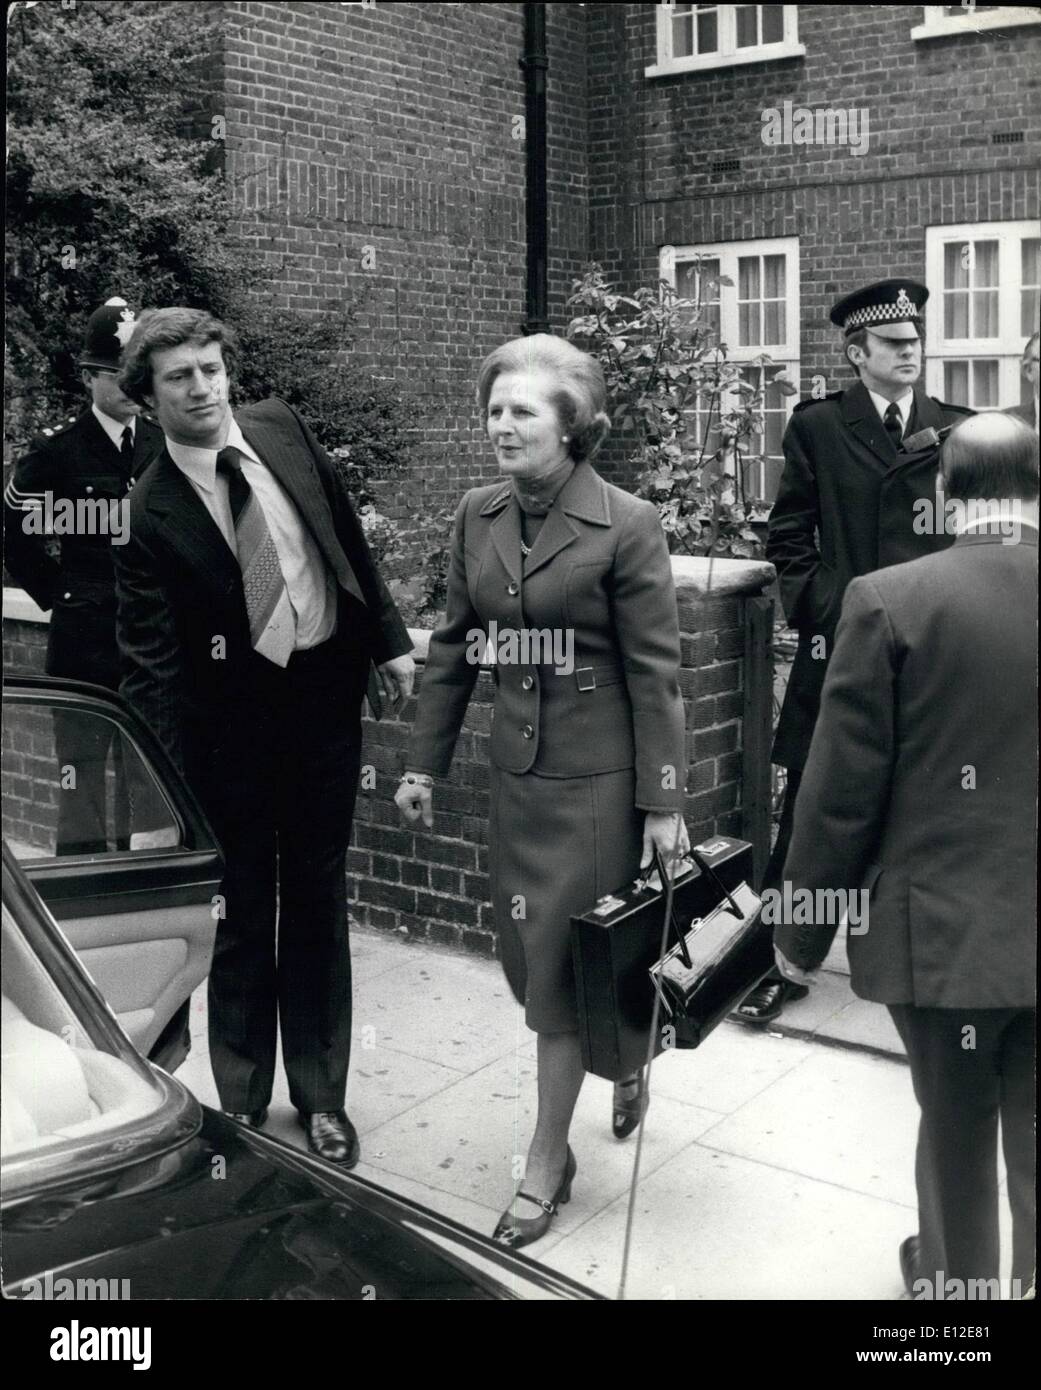 Dic. 15, 2011 - al lavoro la sig.ra Margaret Thatcher, il primo ministro, ben ha protestato dalle forze di polizia e gli assistenti, sembra molto determinato come lei lascia la sua casa per iniziare il suo lavoro al n. 10 Downing street. Foto Stock